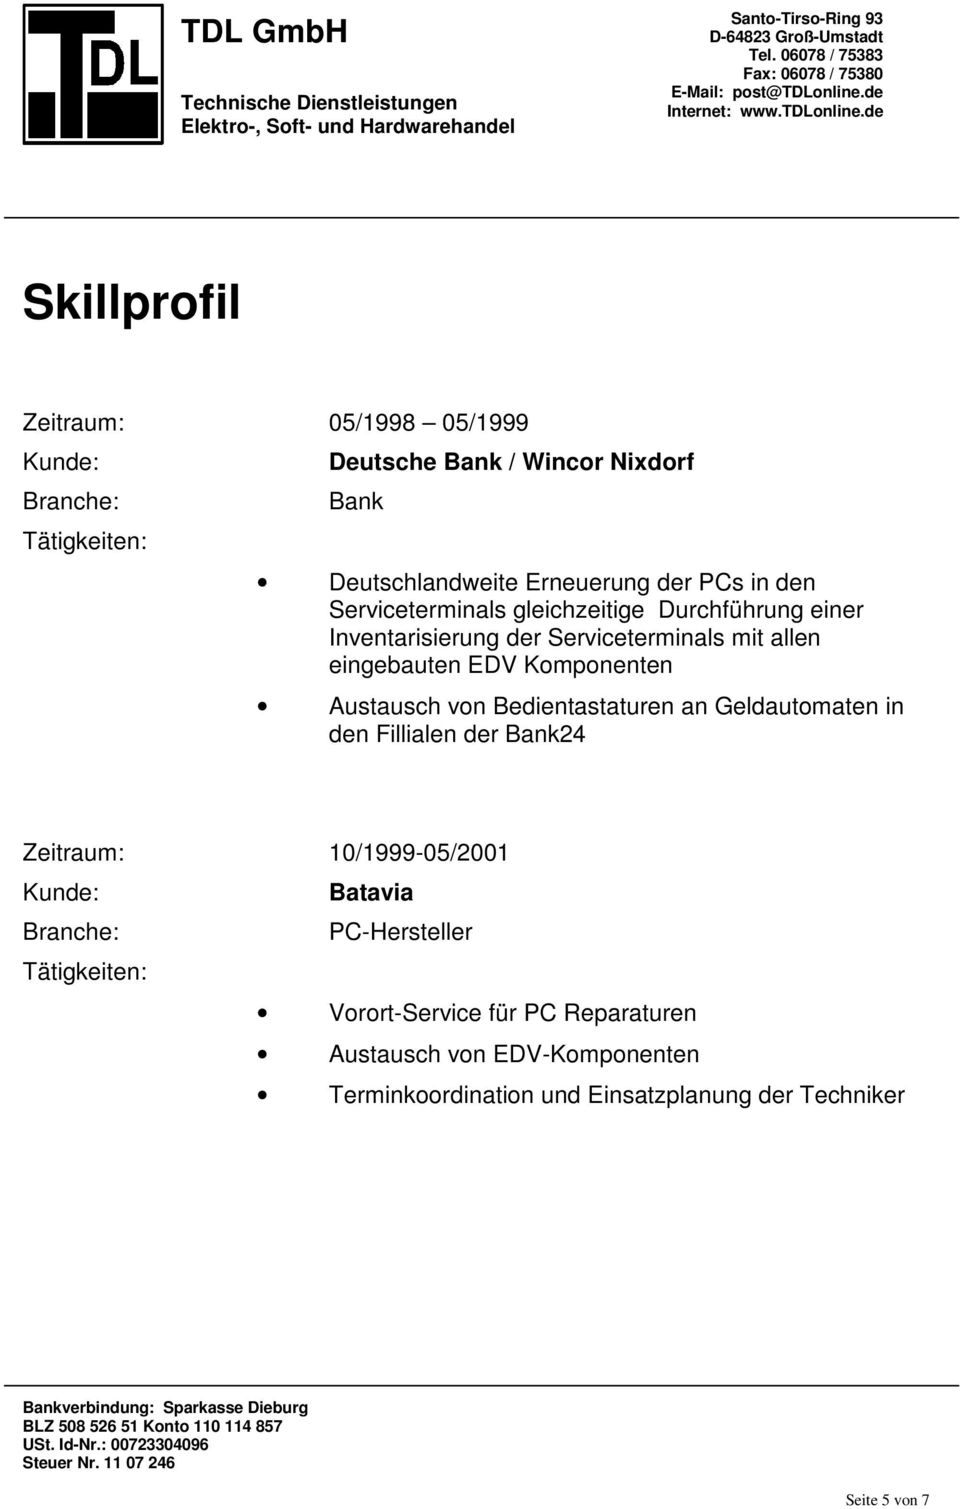 Komponenten Austausch von Bedientastaturen an Geldautomaten in den Fillialen der Bank24 Zeitraum: 10/1999-05/2001